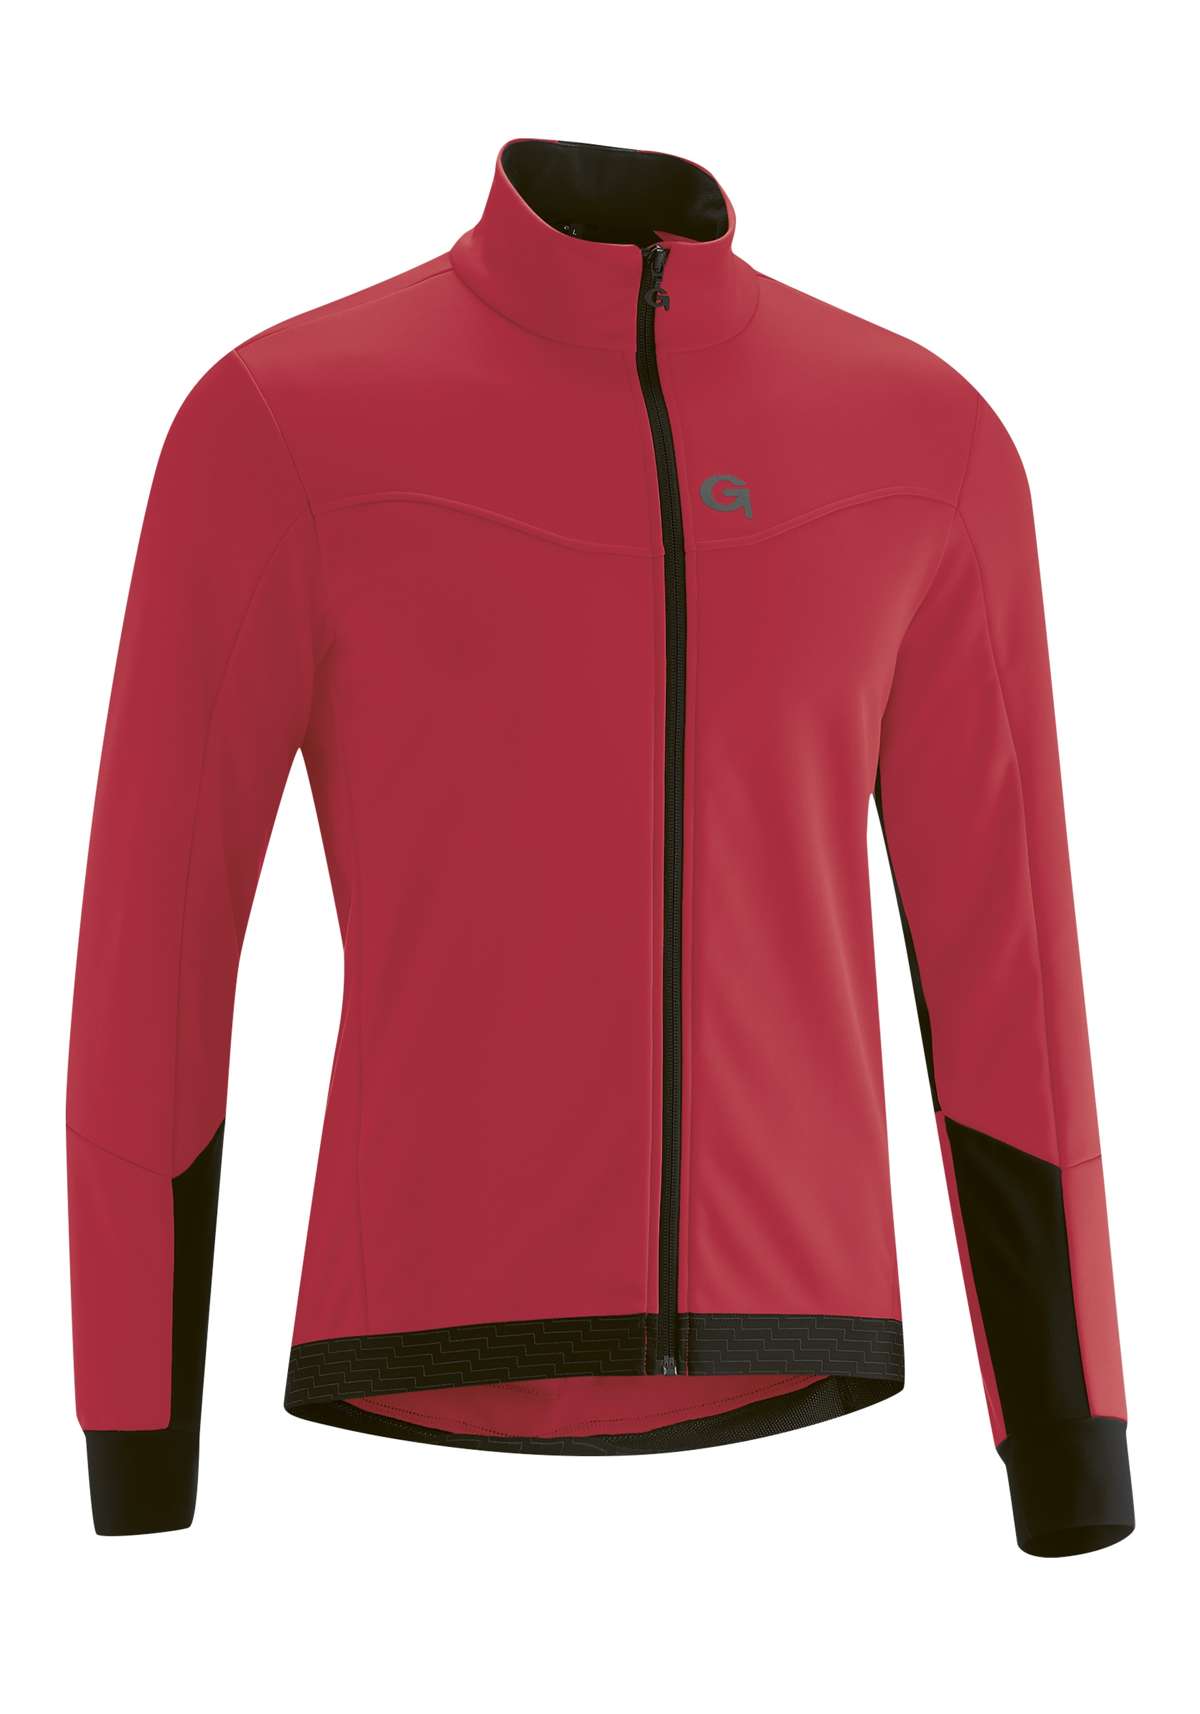 Велосипедная куртка, мужская куртка из софтшелла, ветровка, дышащая и водоотталкивающая.